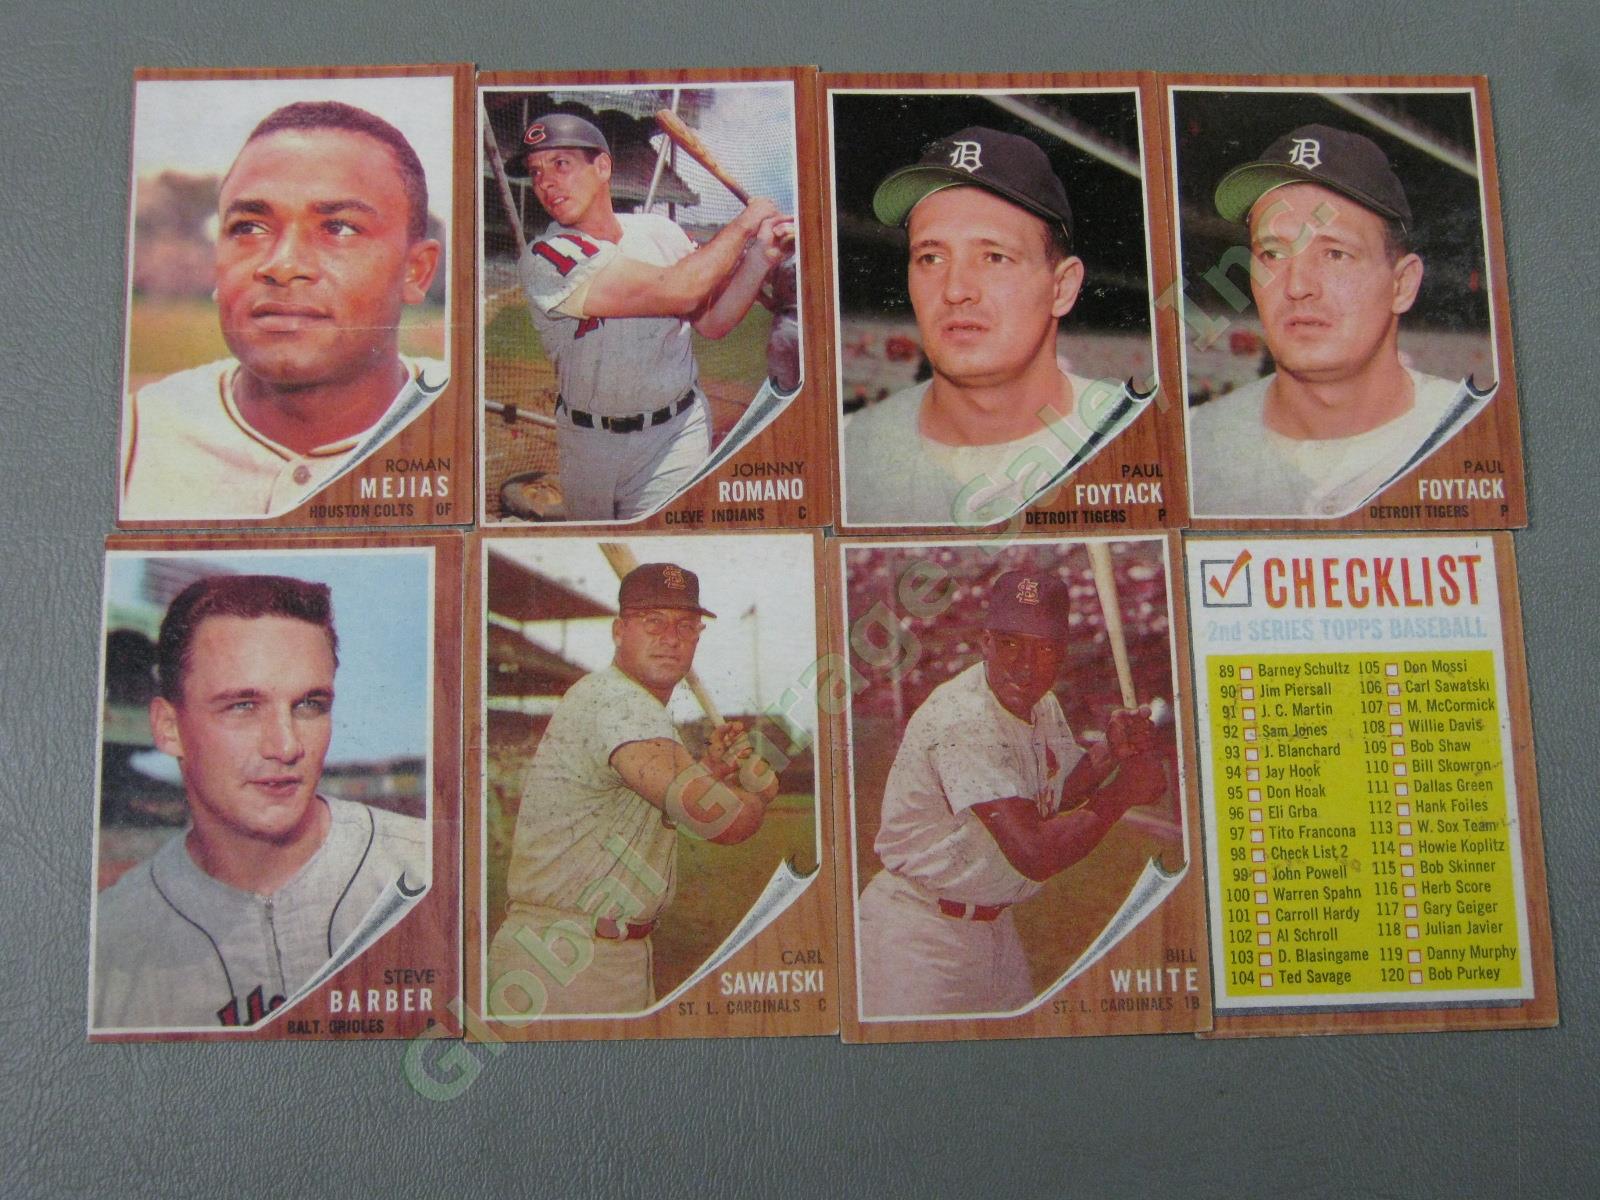 160 Vtg 1961 1962 1963 Topps Baseball Card Lot w/ RBI Home Run Leaders + VG-EX 15